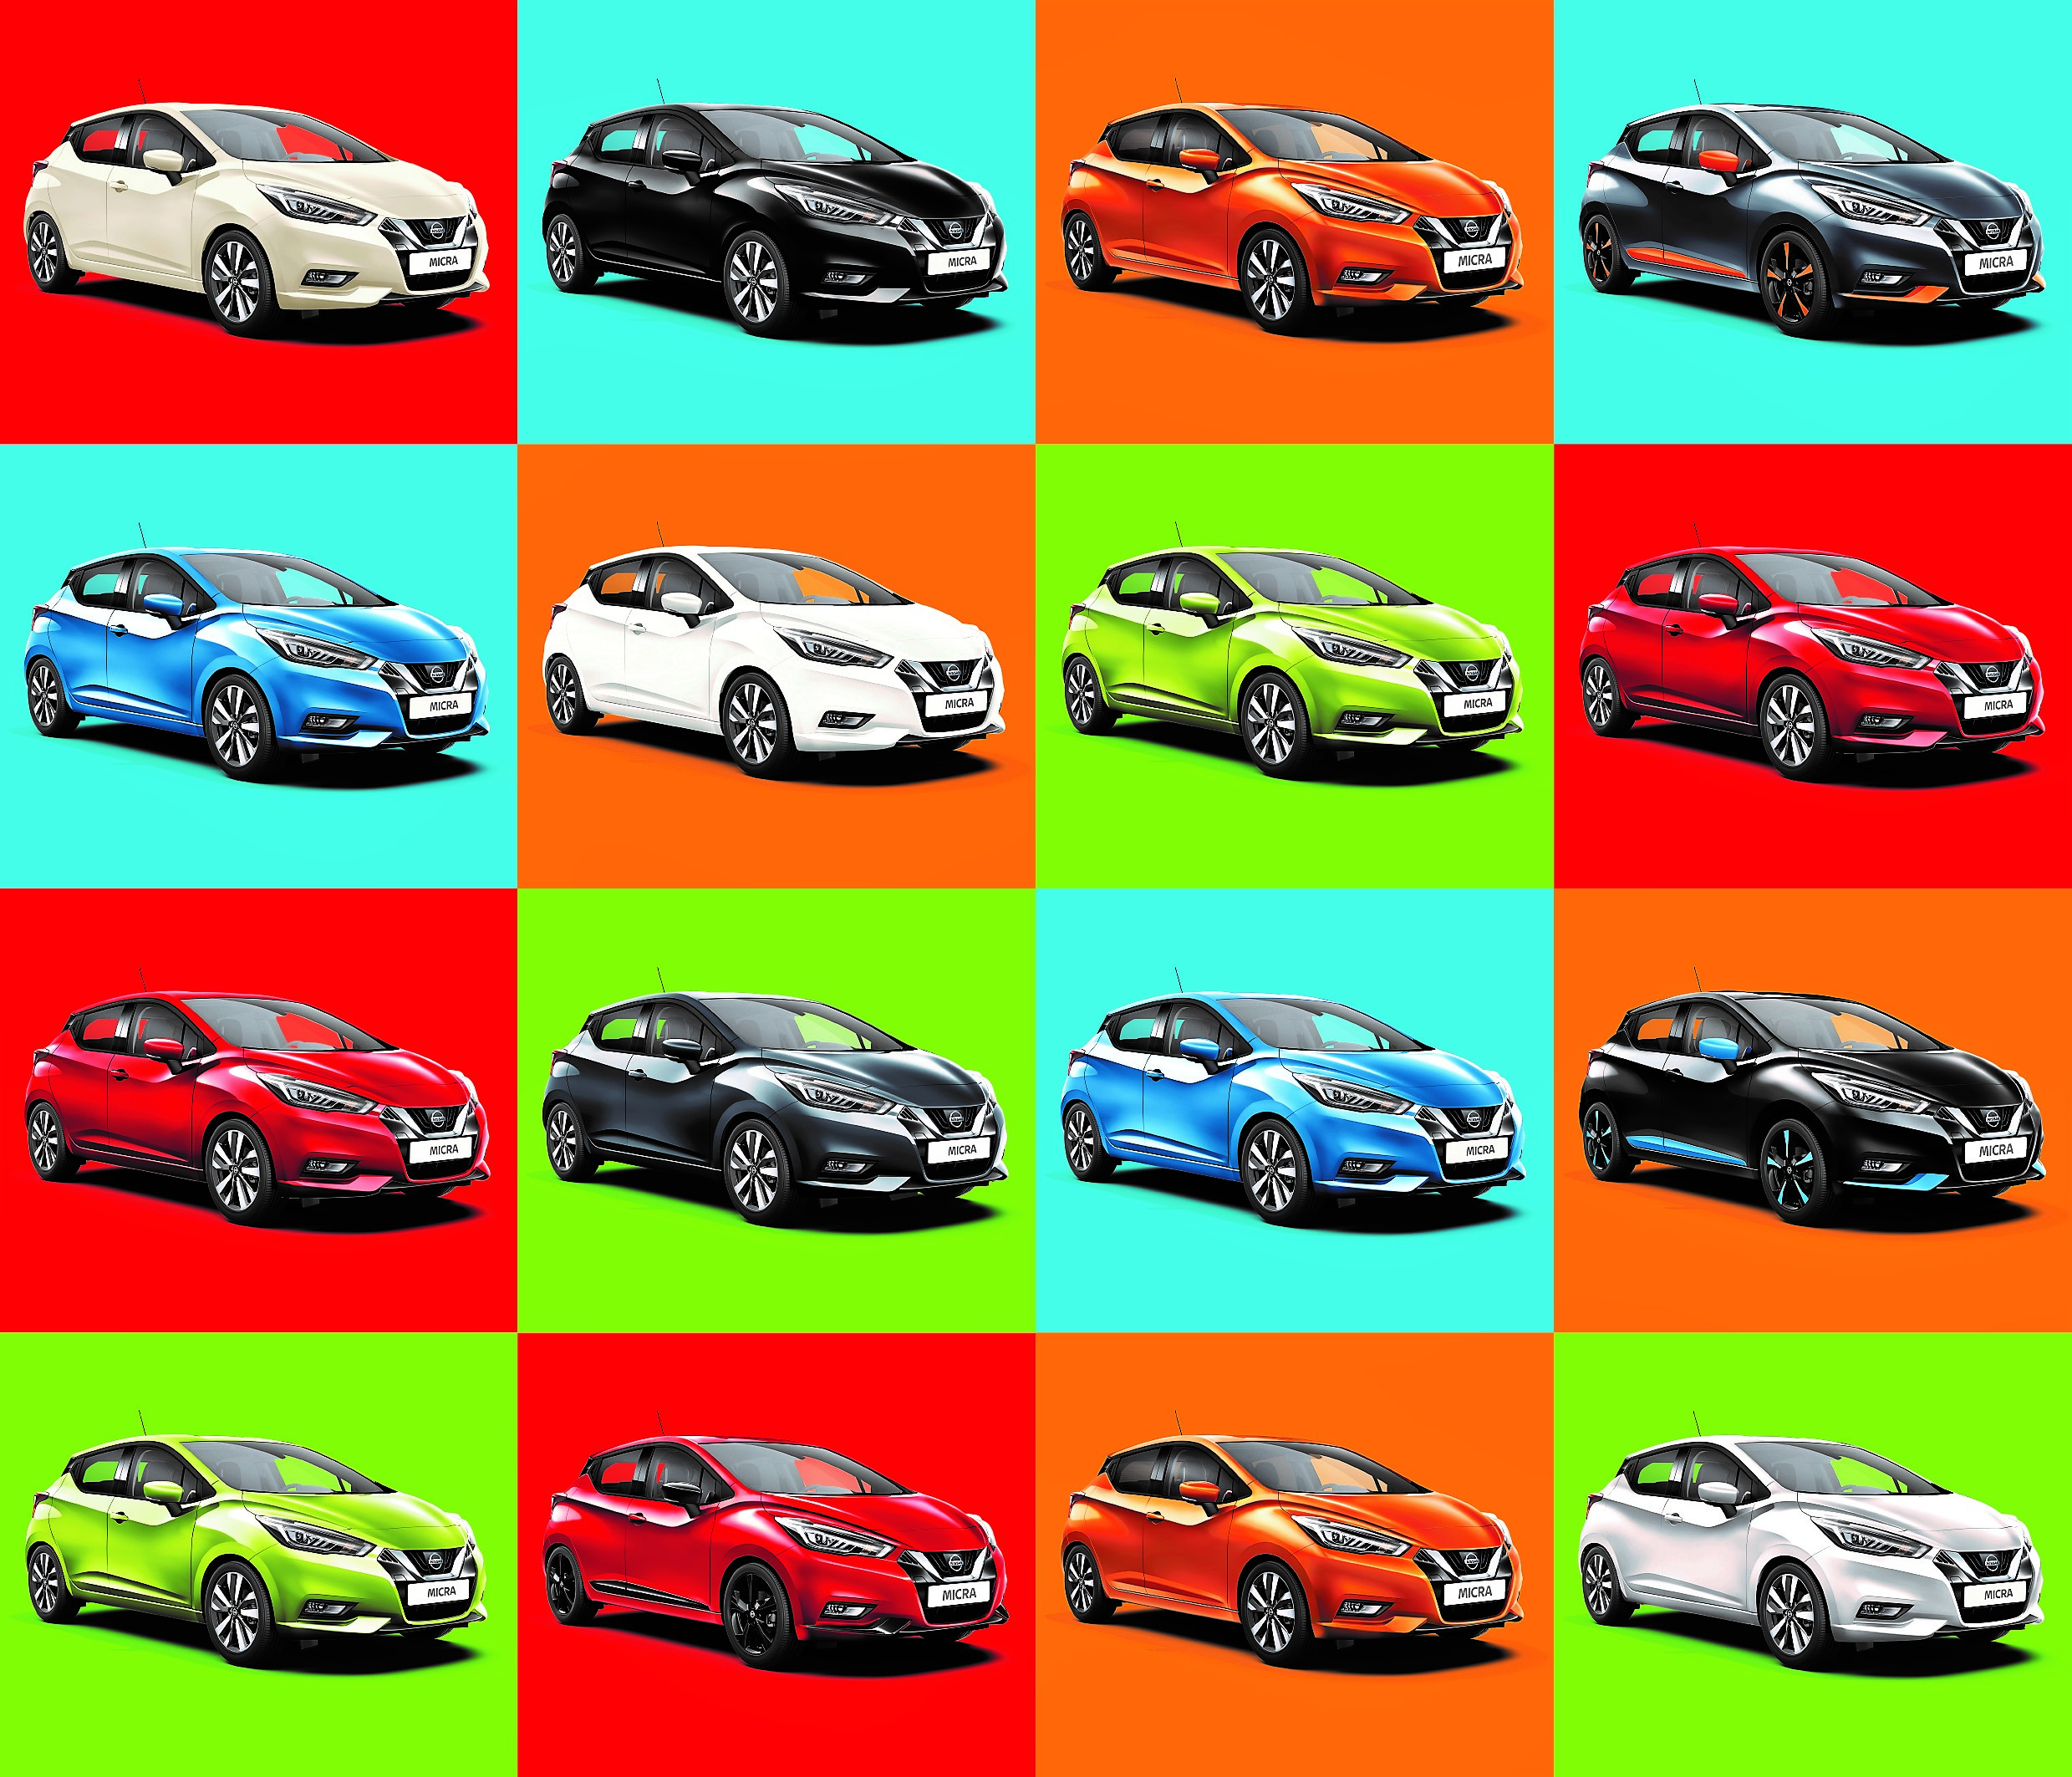 دراسة لشركة "نيسان" تظهر أن 86% من المشاركين يقودون سيارات لا تتناسب ألوانها مع شخصياتهم